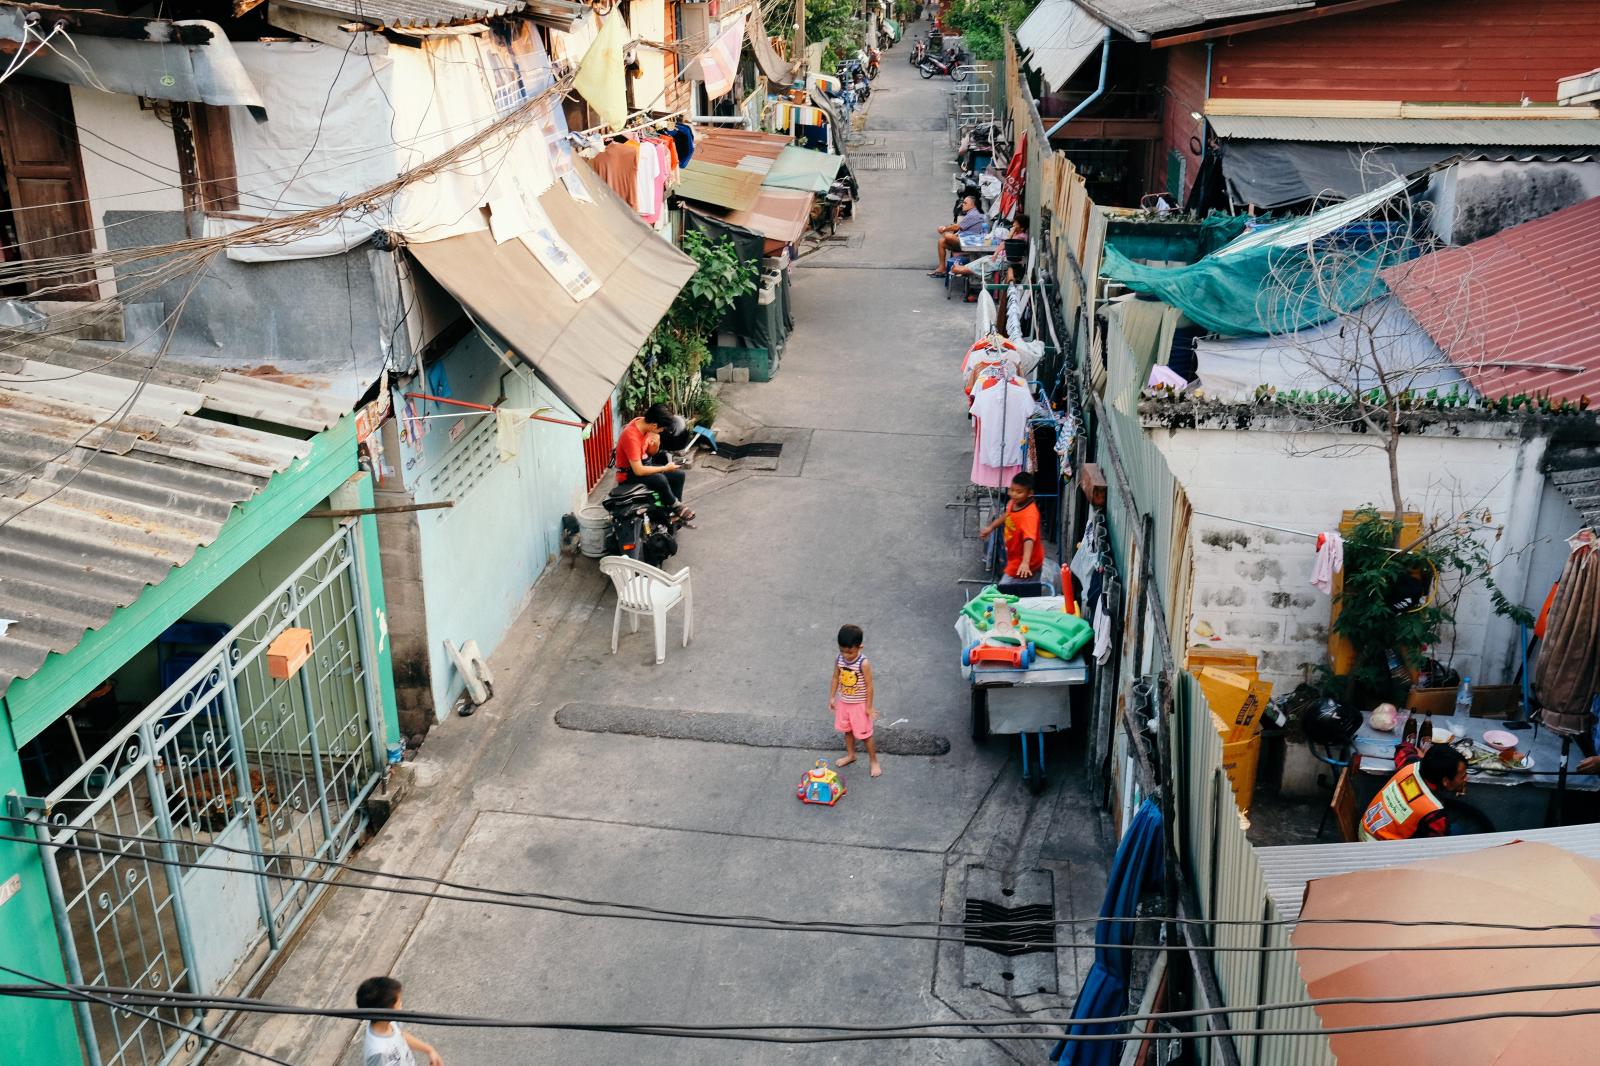 Street scene in Bangkok